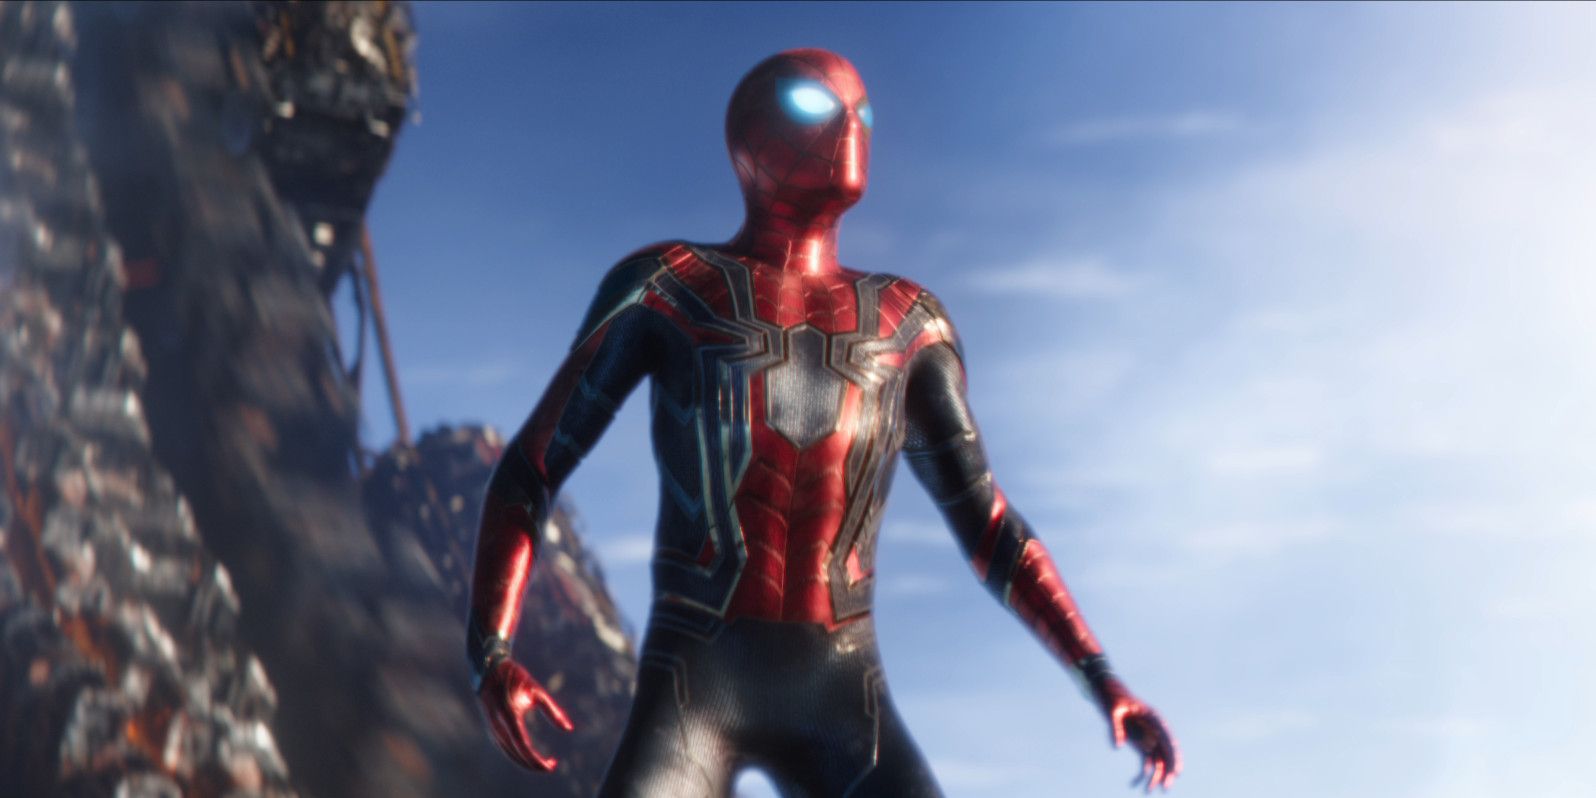 Avengers Infinity War Spider-Man Stands Tall